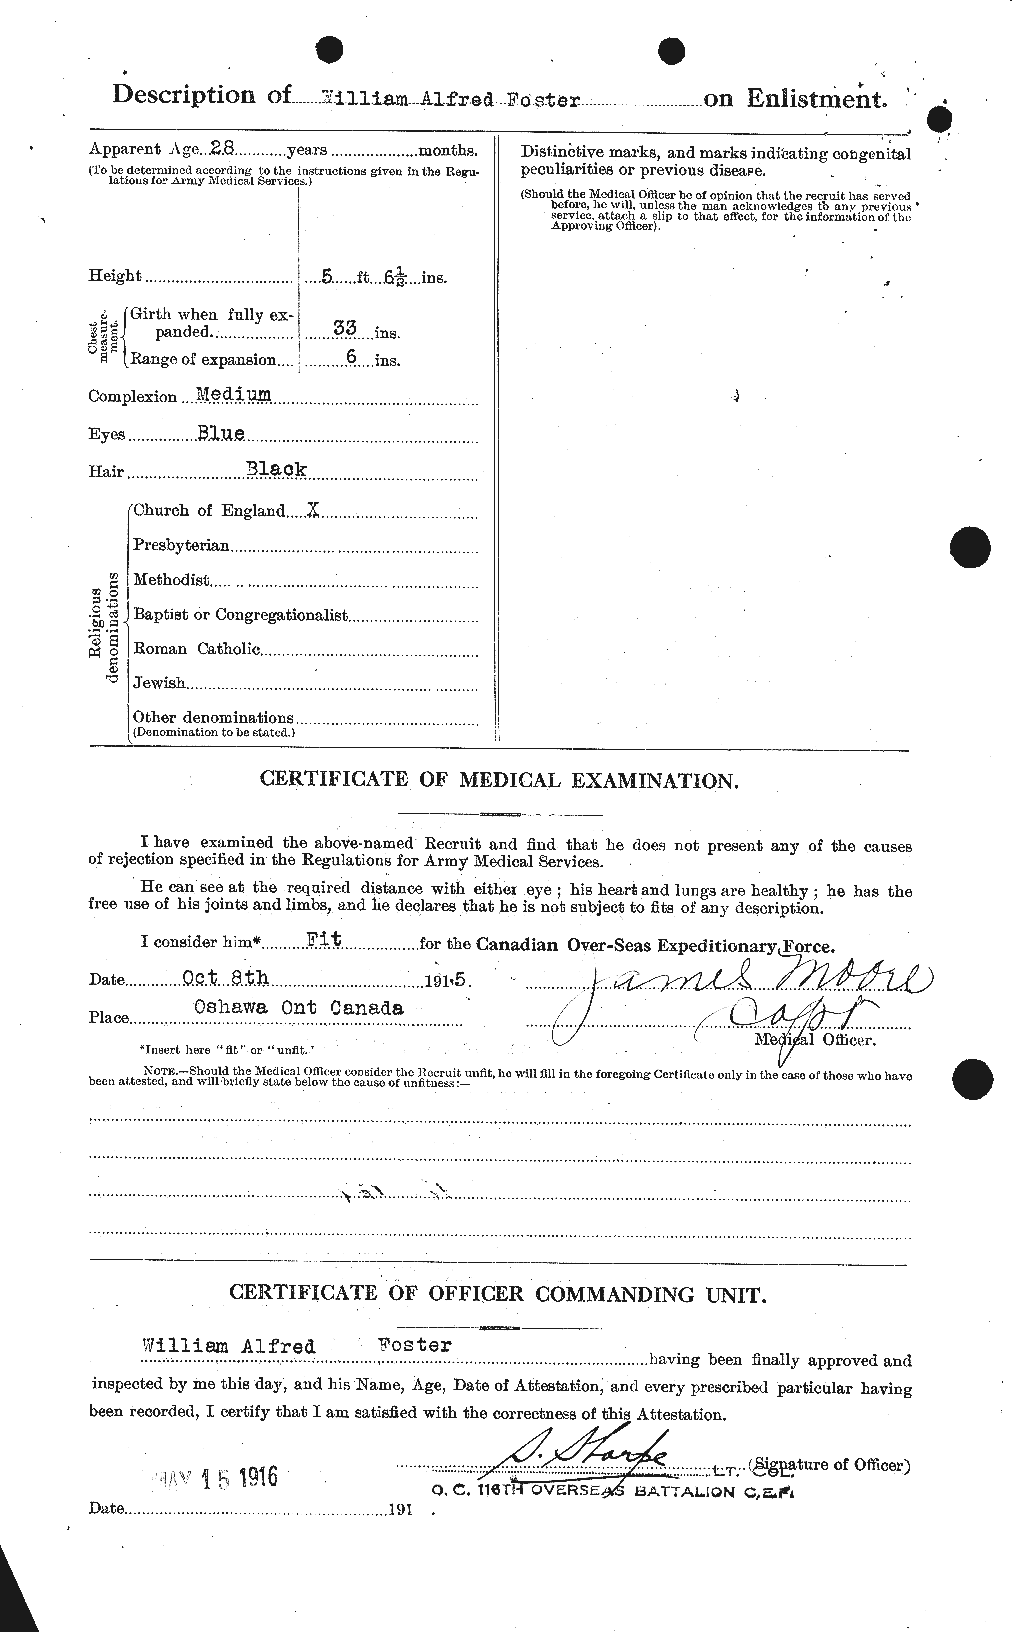 Dossiers du Personnel de la Première Guerre mondiale - CEC 328726b